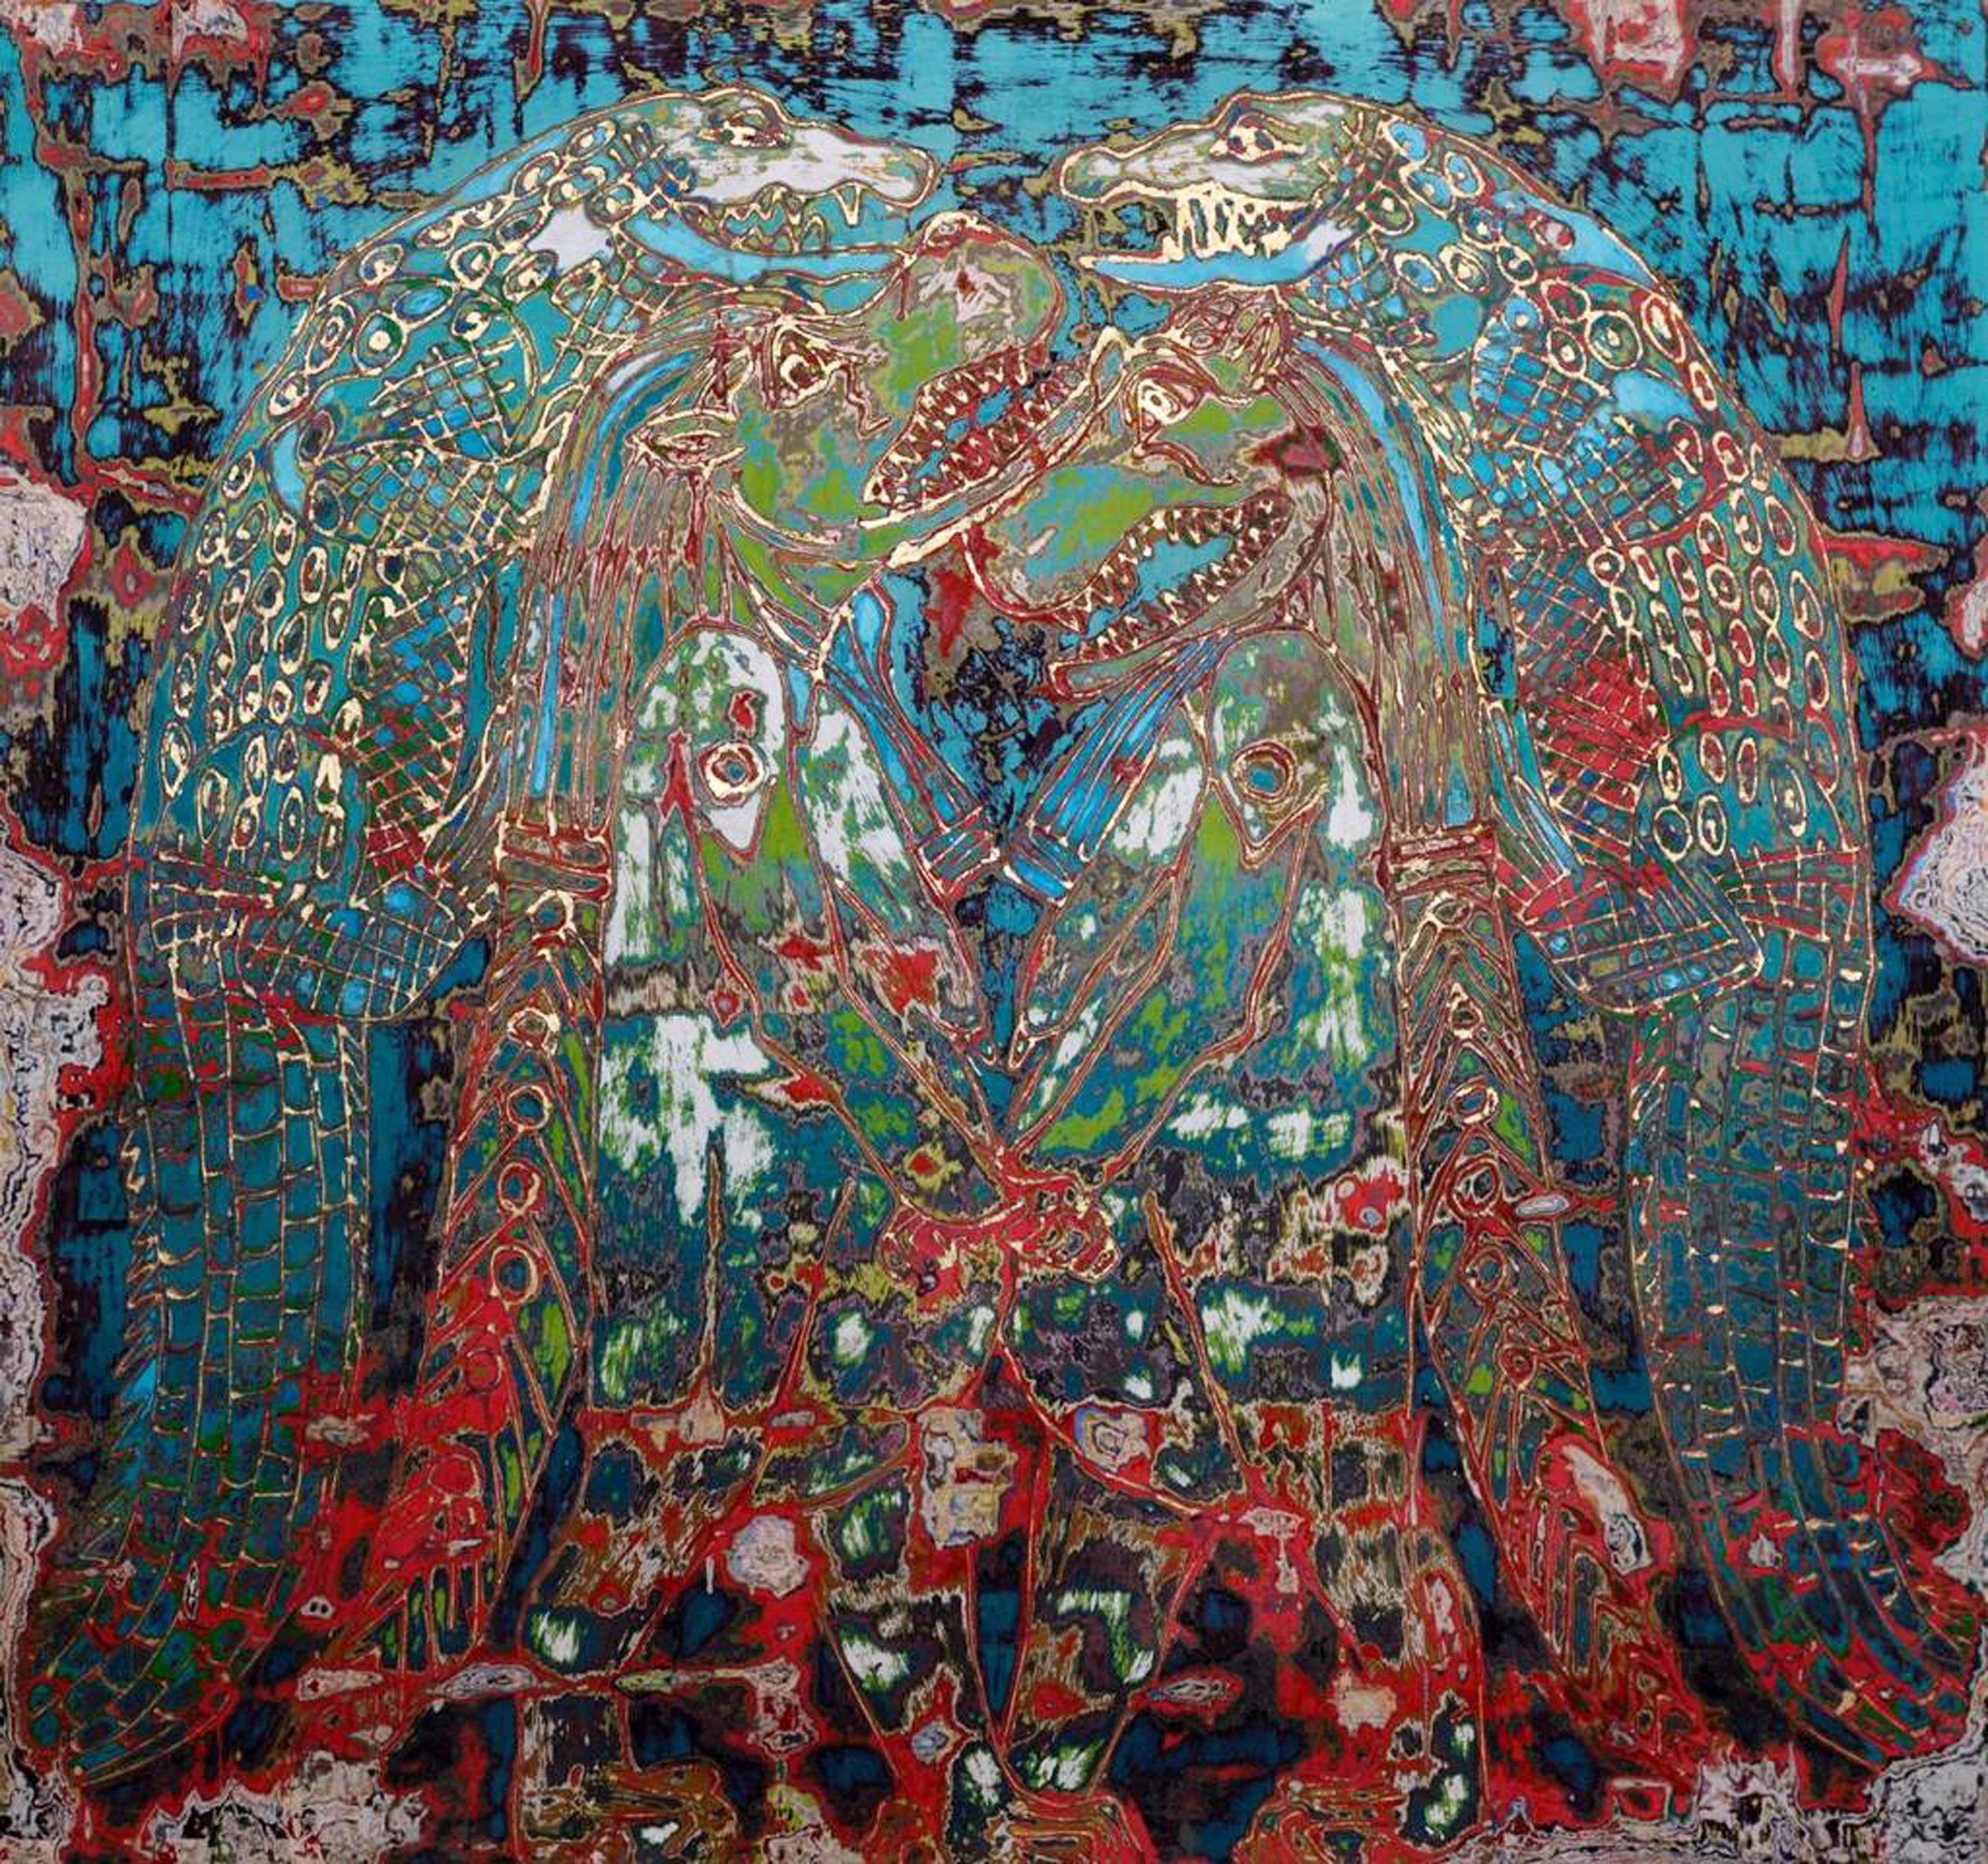 "Krokodil Mirage" Gemischte Medien Malerei 47" x 47" Zoll von Ibrahim Khatab

Ibrahim Khatab wurde 1984 in Kairo geboren, arbeitet als Co-Dozent an der Universität Kairo und mischt in seinen Werken Malerei, Videokunst und Installation. Er begann